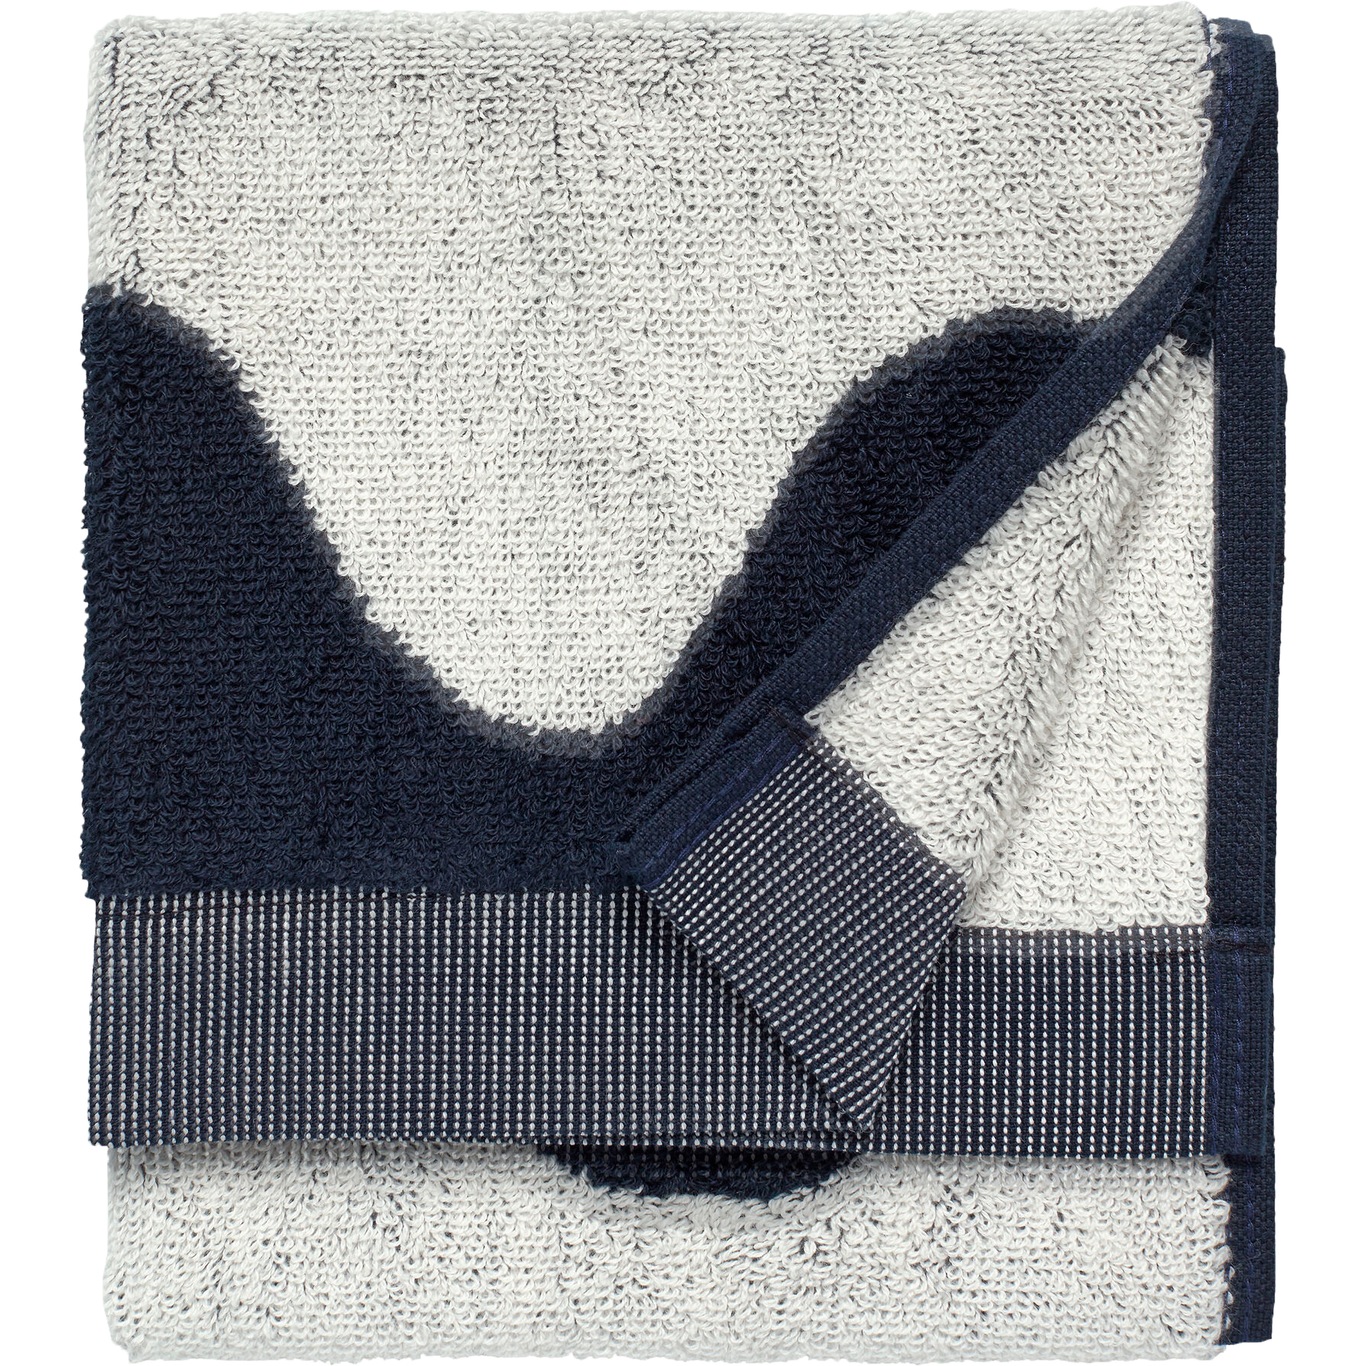 Lokki Gæstehåndklæde Mørkeblåt / Offwhite, 30x50 cm